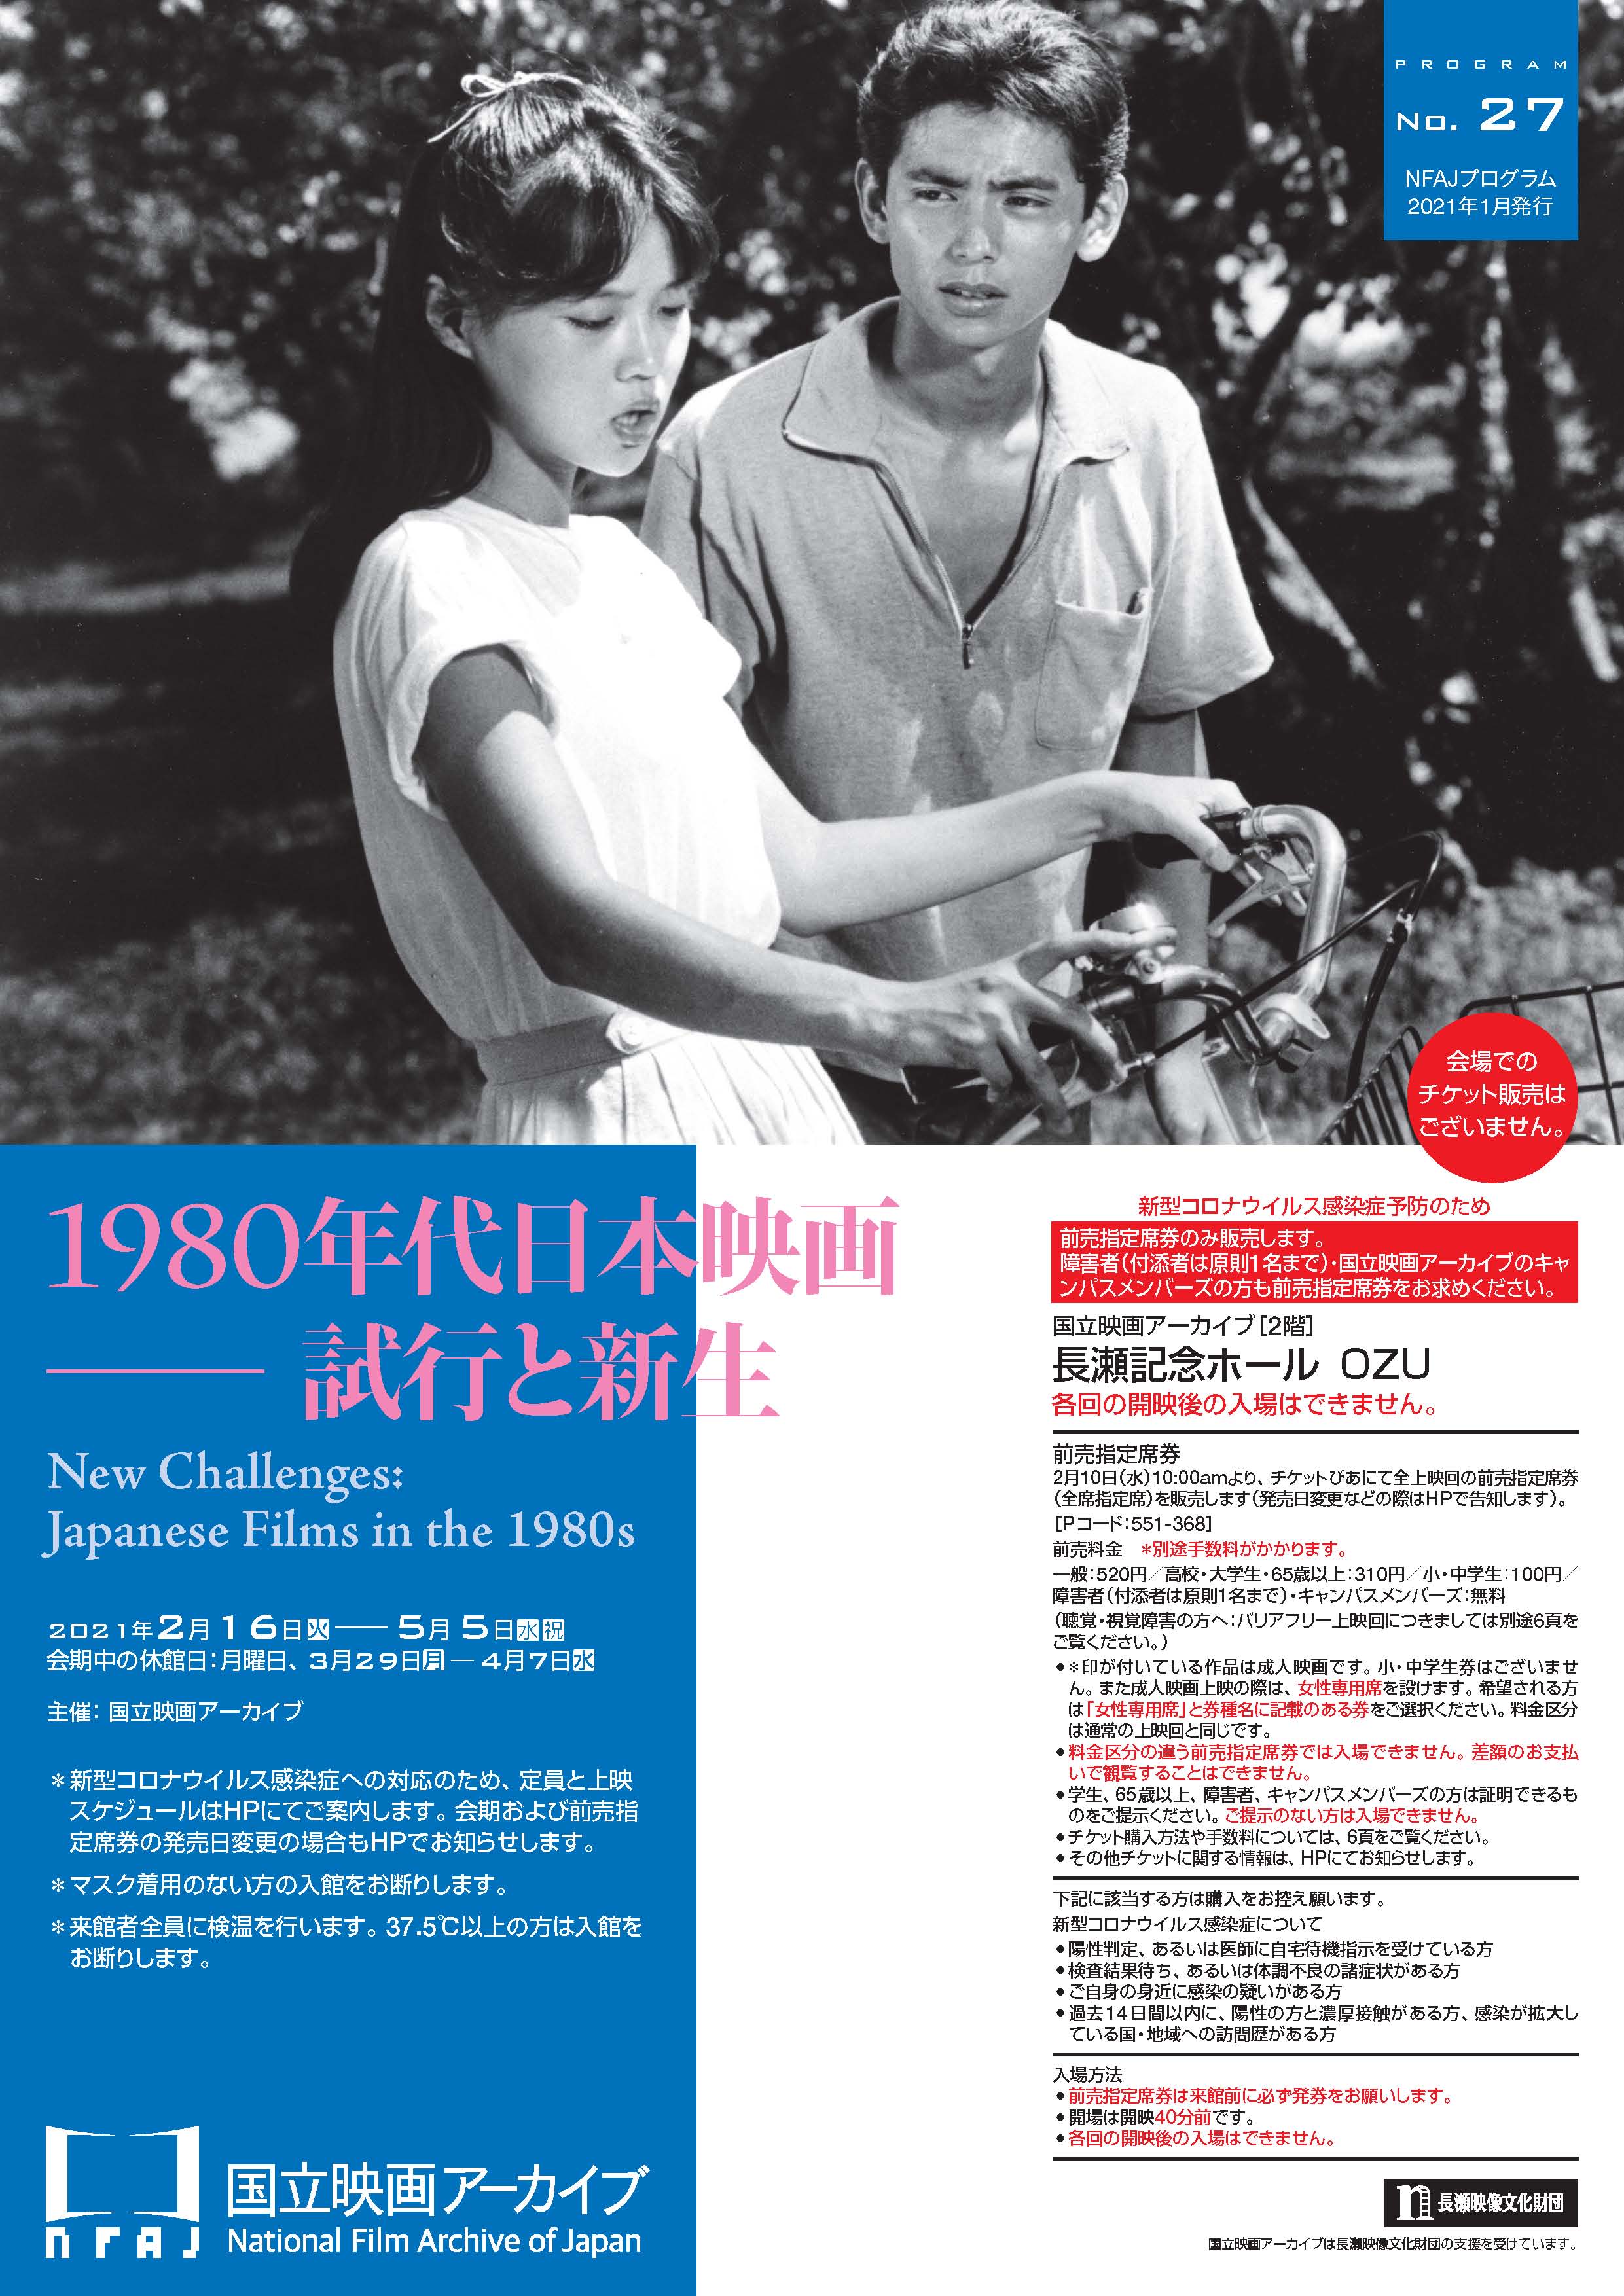 1980年代日本映画 試行と新生 国立映画アーカイブ